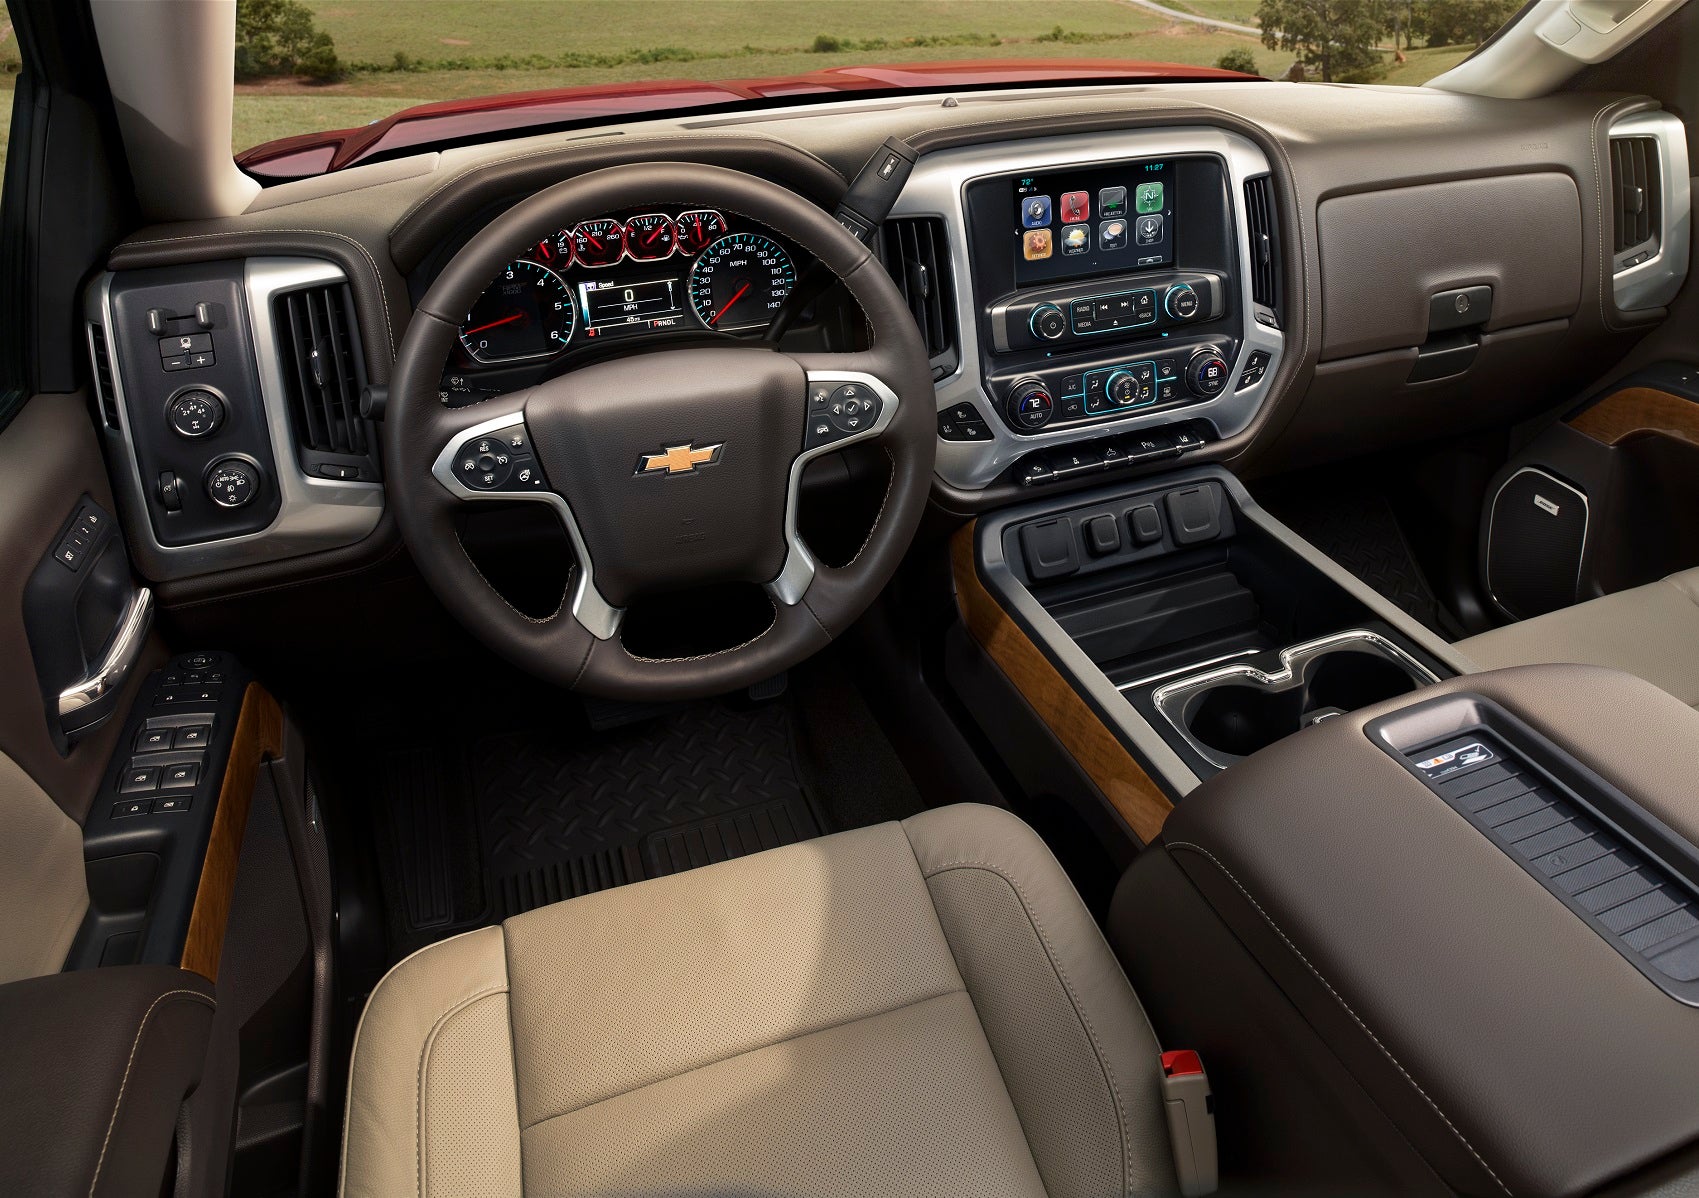 2019 Chevy Silverado 2500 Interior Technology Features 